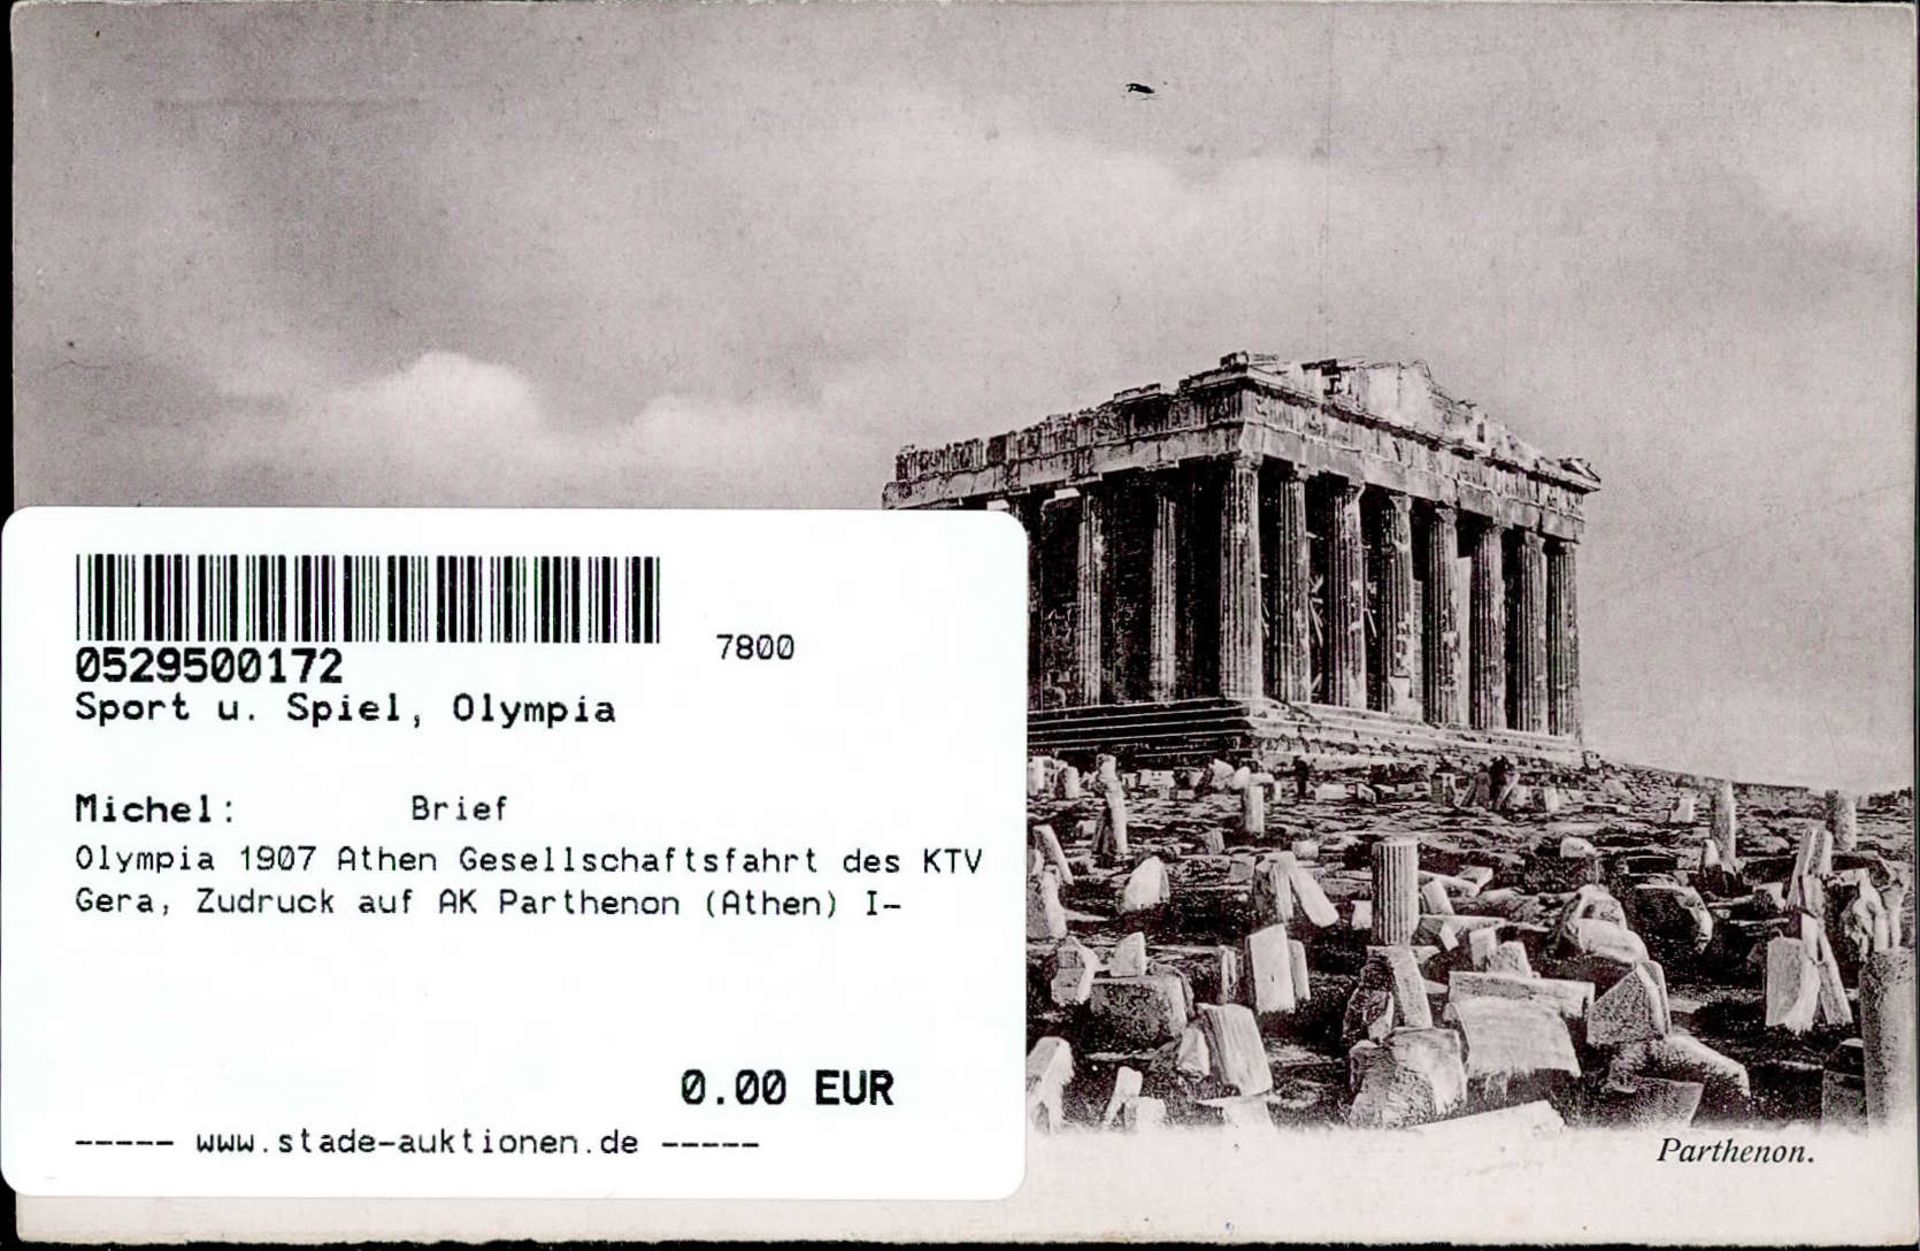 Olympia 1907 Athen Gesellschaftsfahrt des KTV Gera, Zudruck auf AK Parthenon (Athen) I- - Image 2 of 2